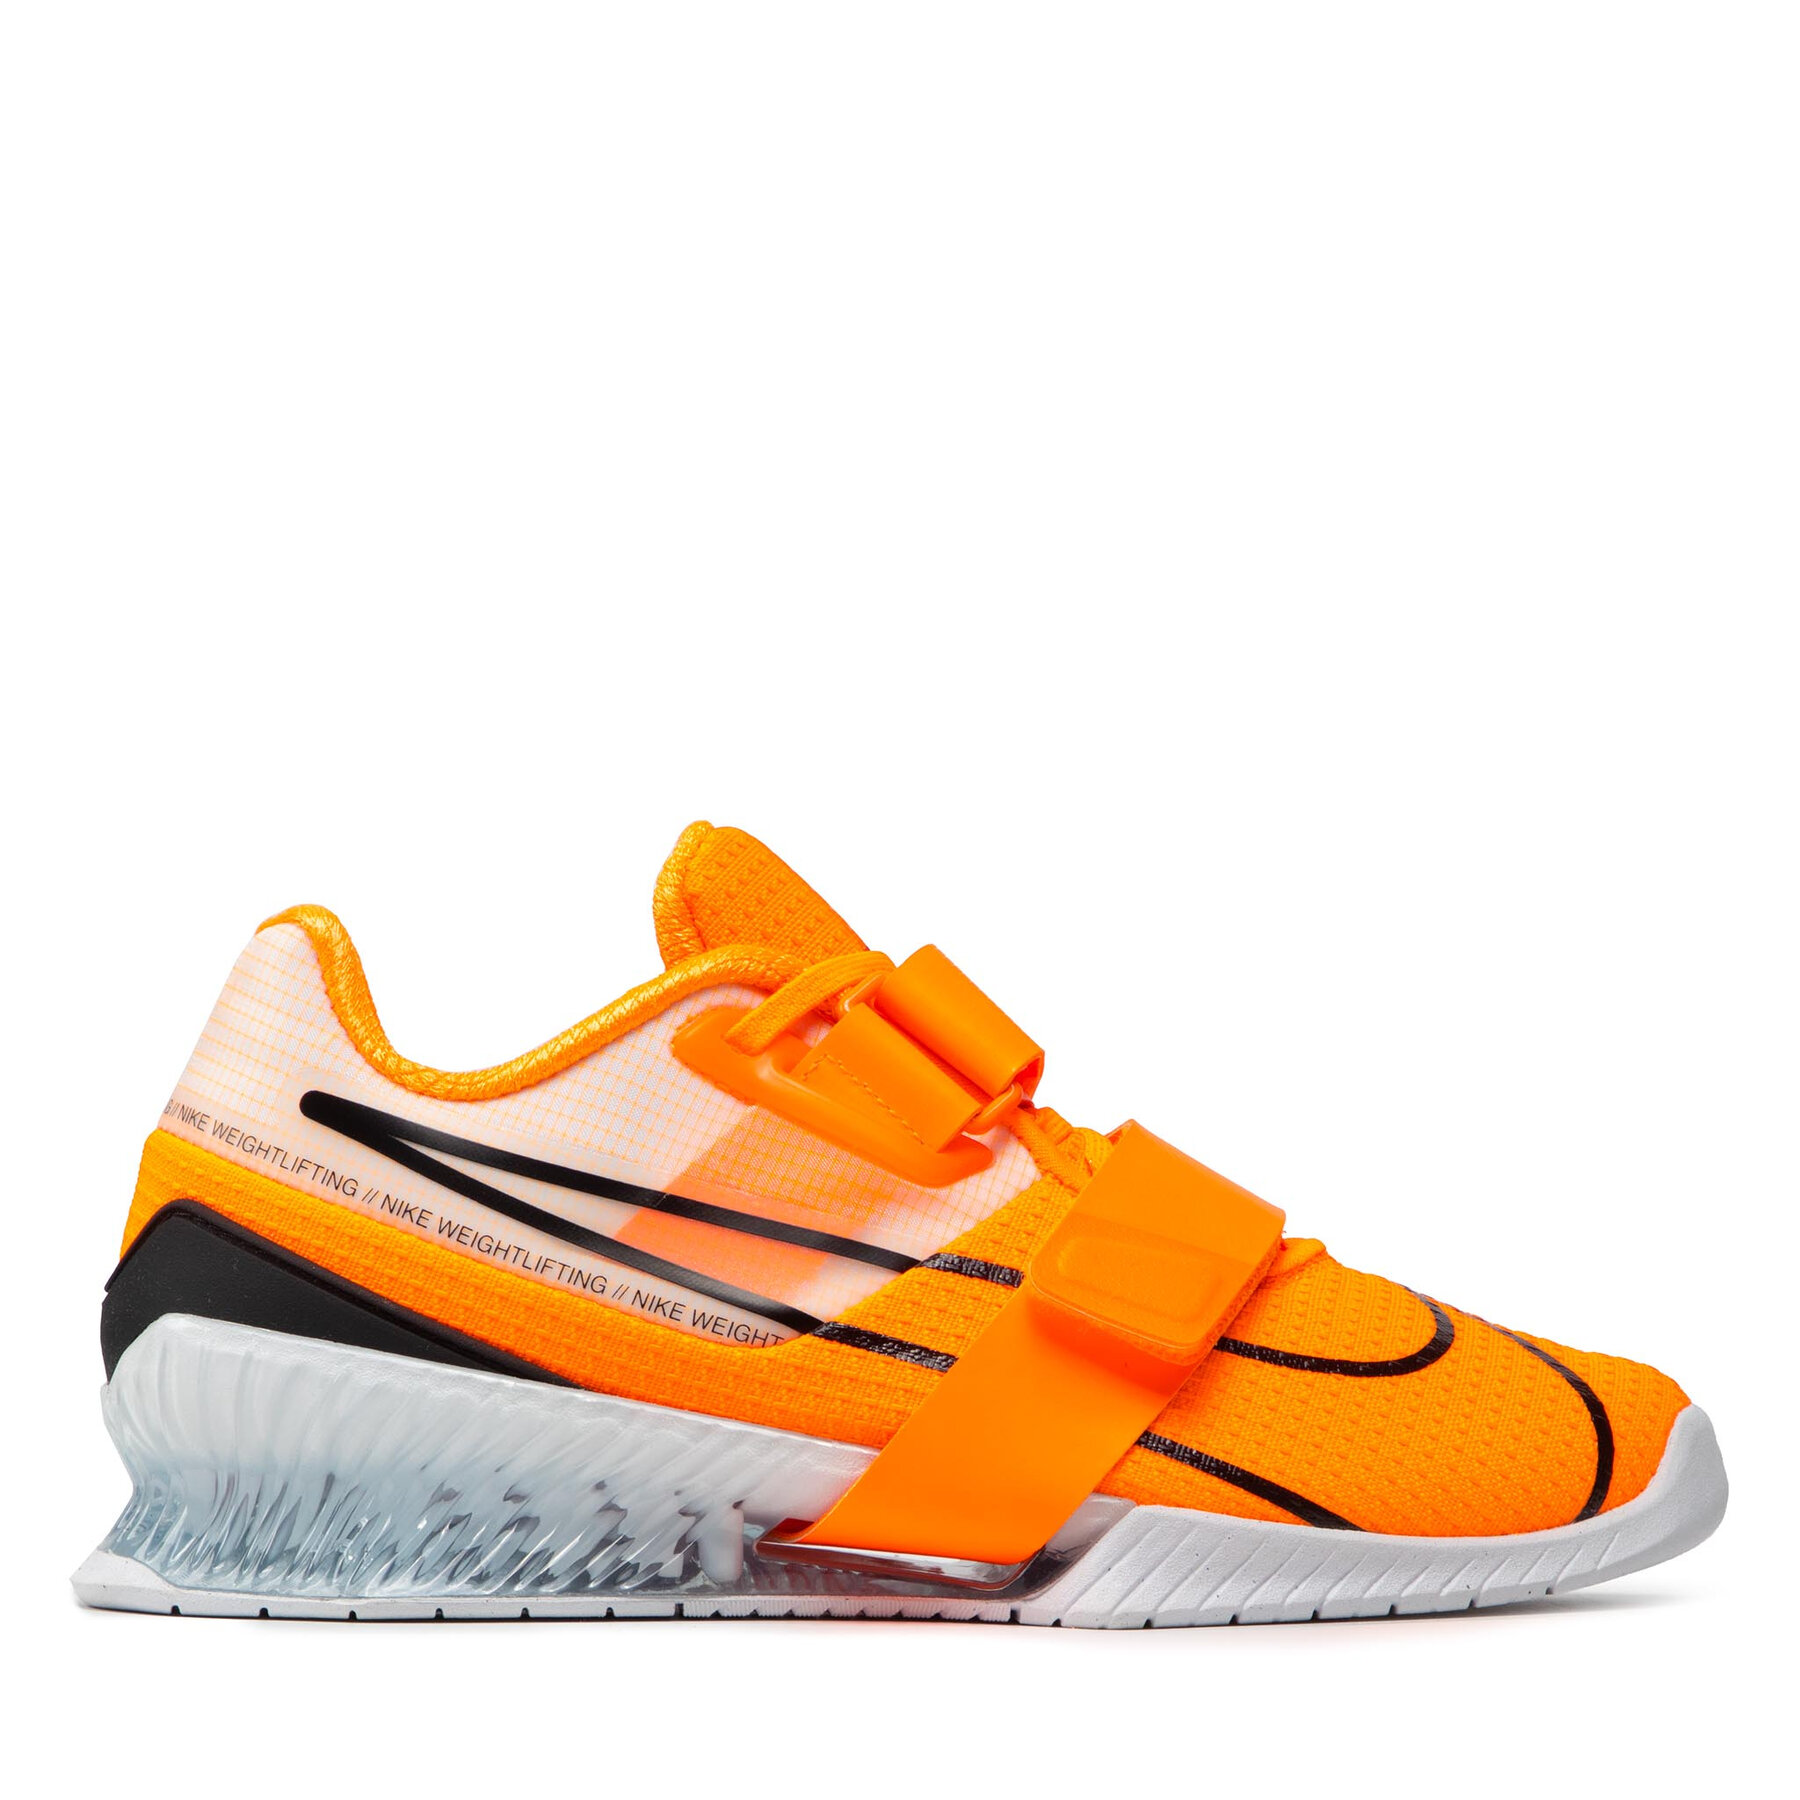 Nike Romaleos 4 total orange/black/white